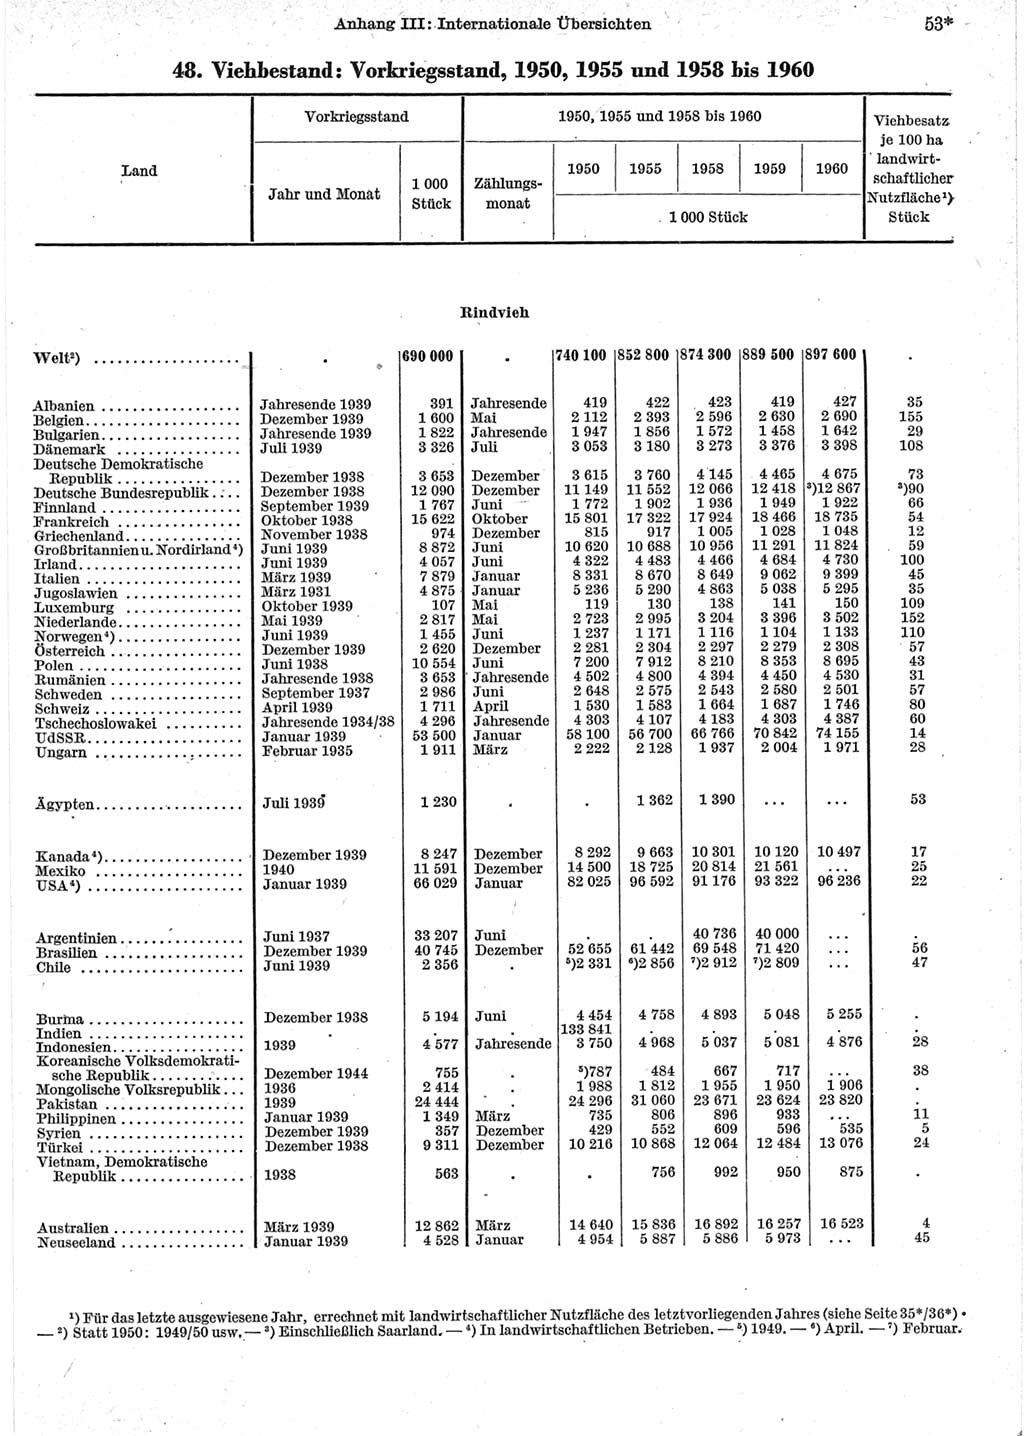 Statistisches Jahrbuch der Deutschen Demokratischen Republik (DDR) 1962, Seite 53 (Stat. Jb. DDR 1962, S. 53)